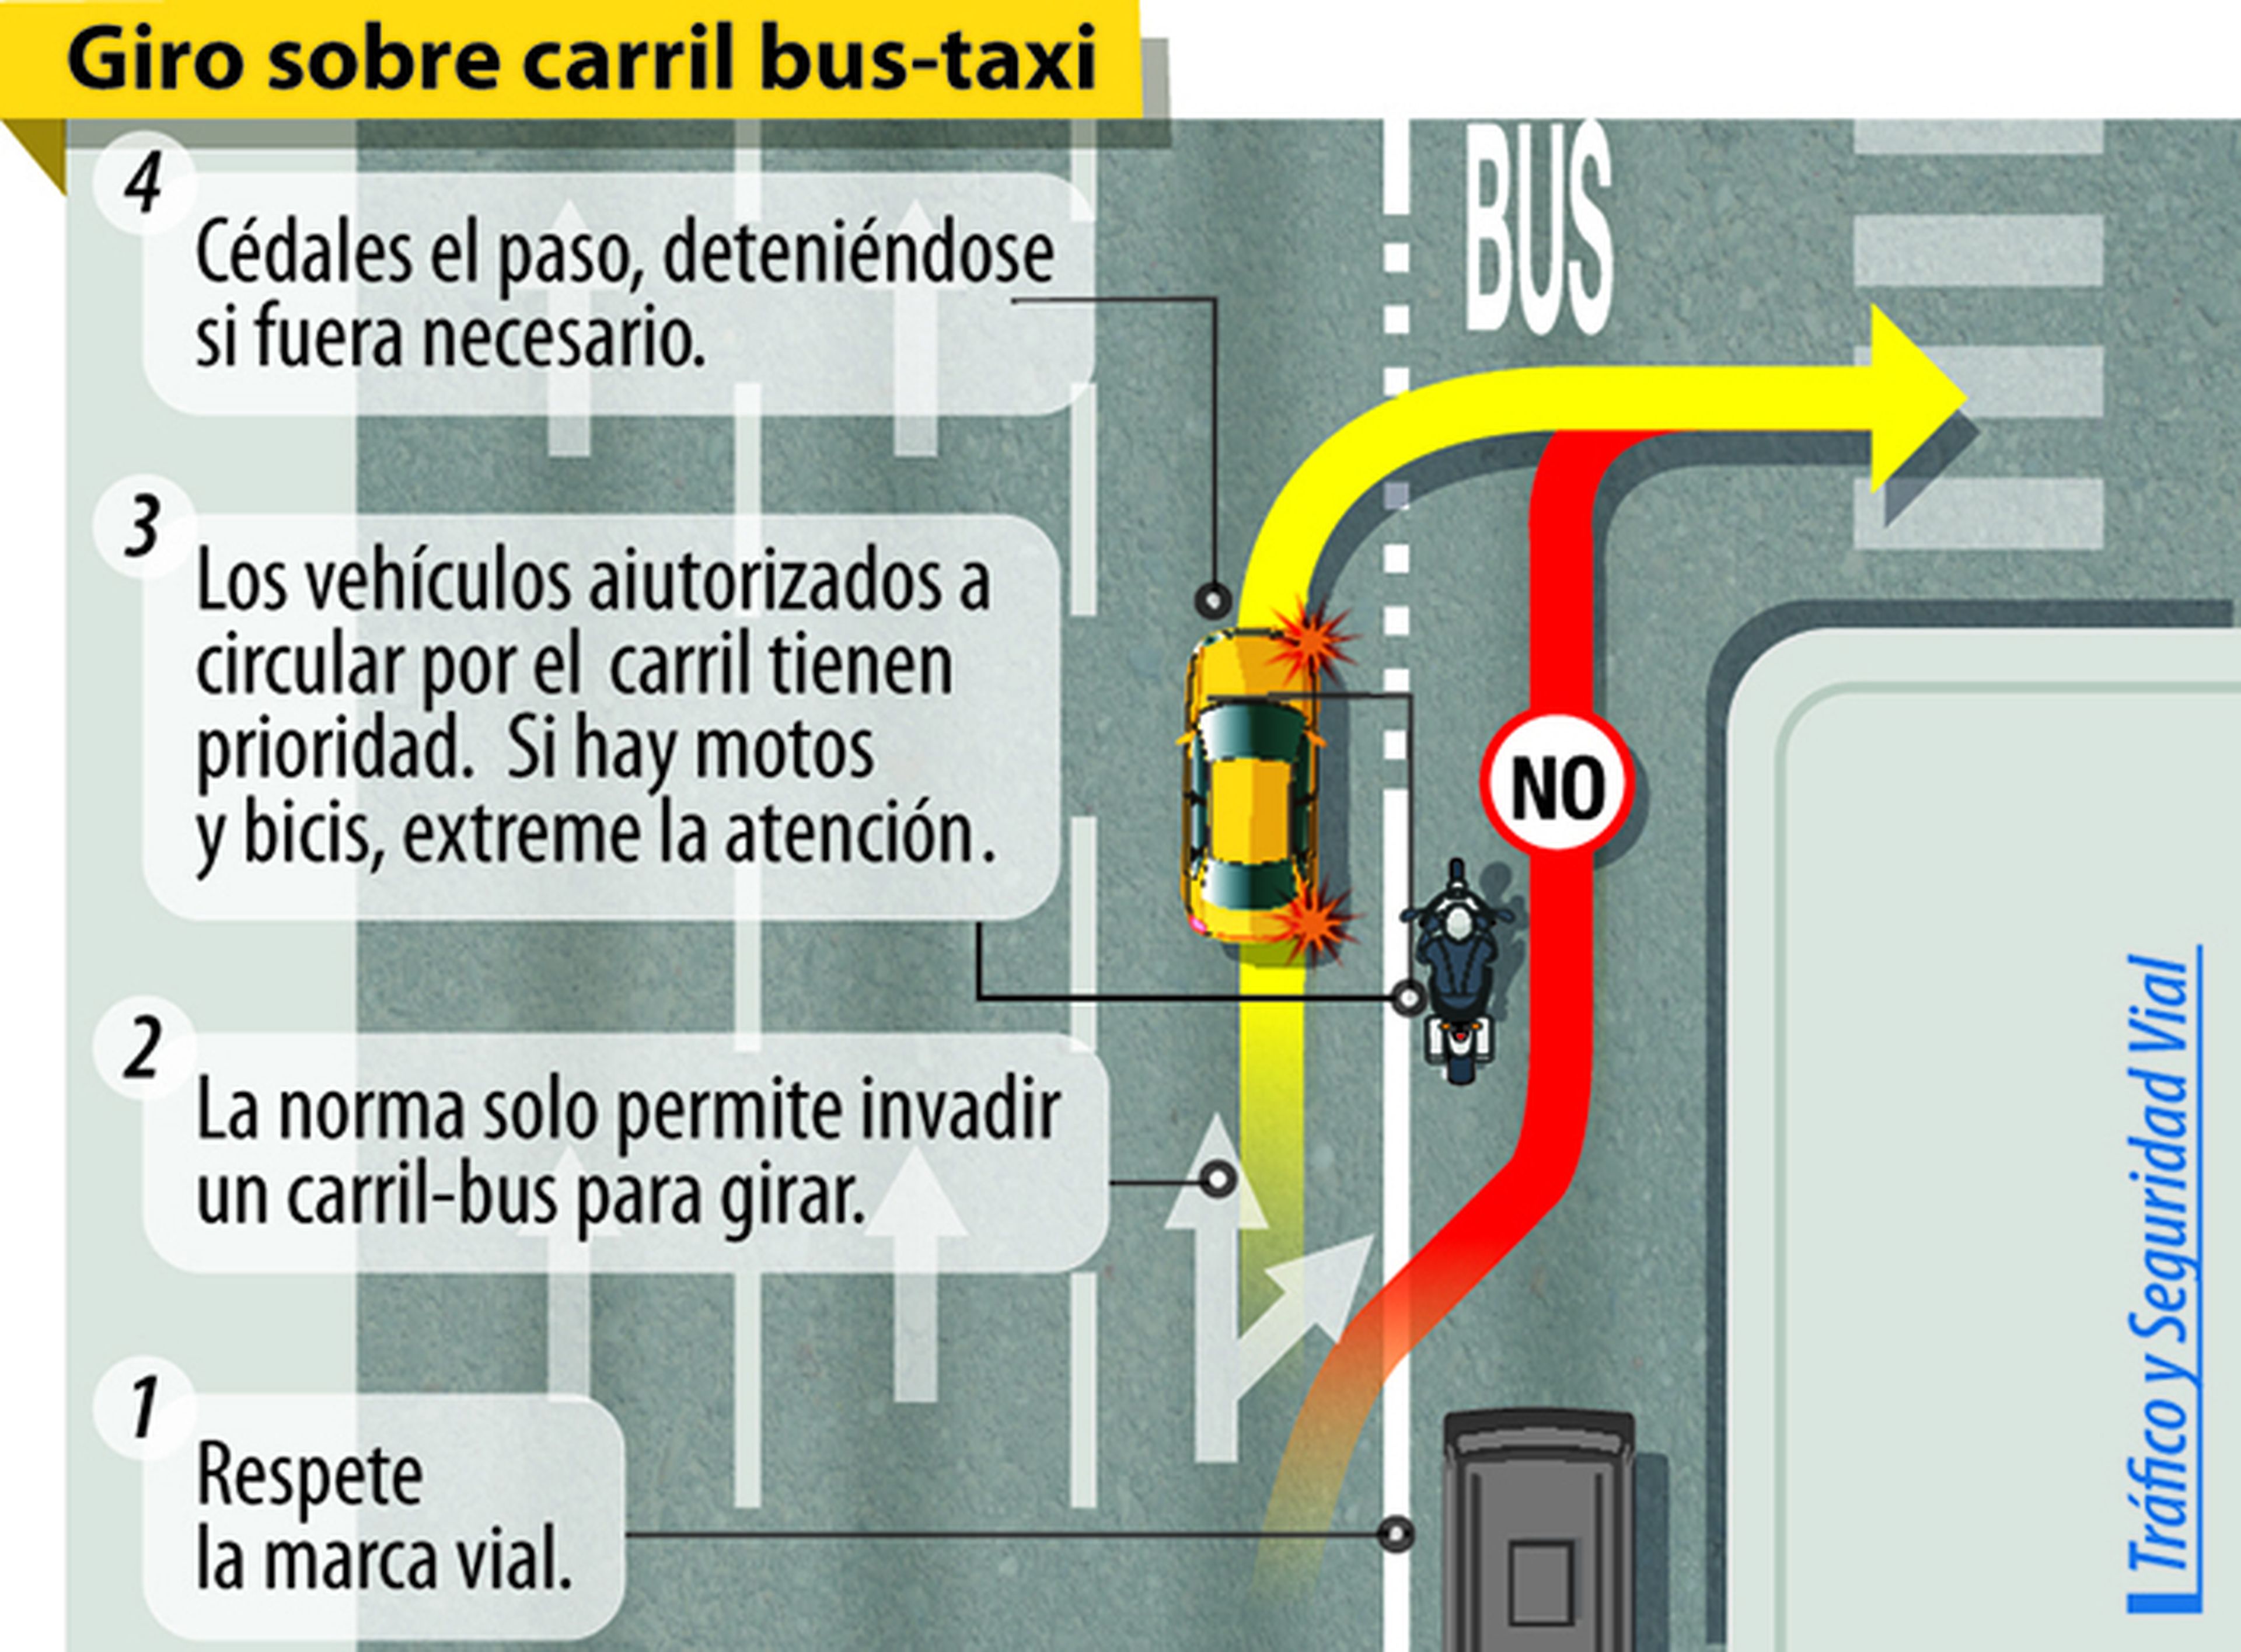 Giros sobre carril bus-taxi